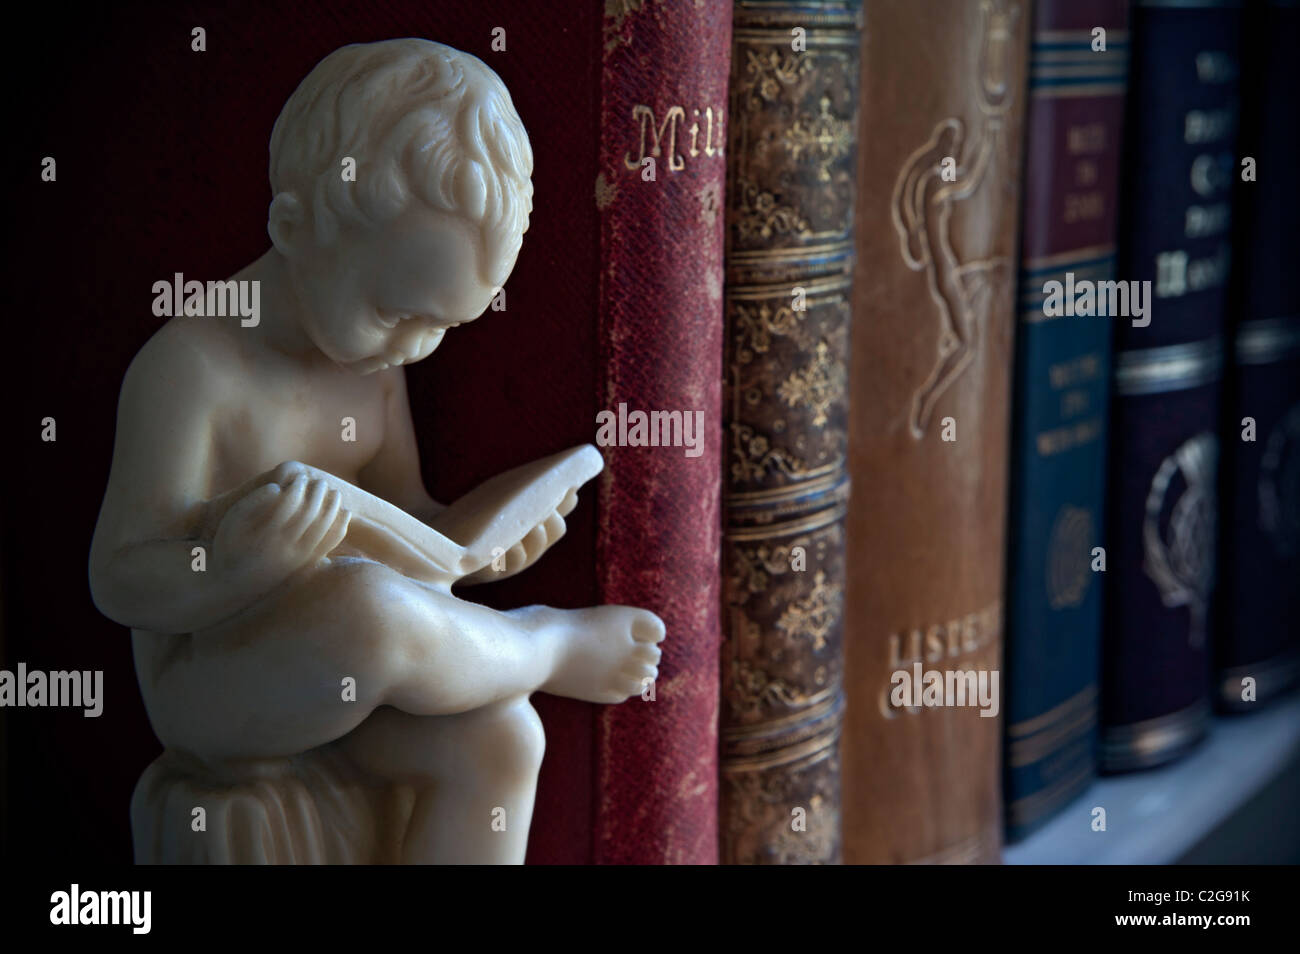 Bibliothek Bücher lesen Regal Klassiker Statue der Junge neben klassischen Leder gebunden Bücher einschließlich historischer John Milton's Paradise Lost poetische Stockfoto